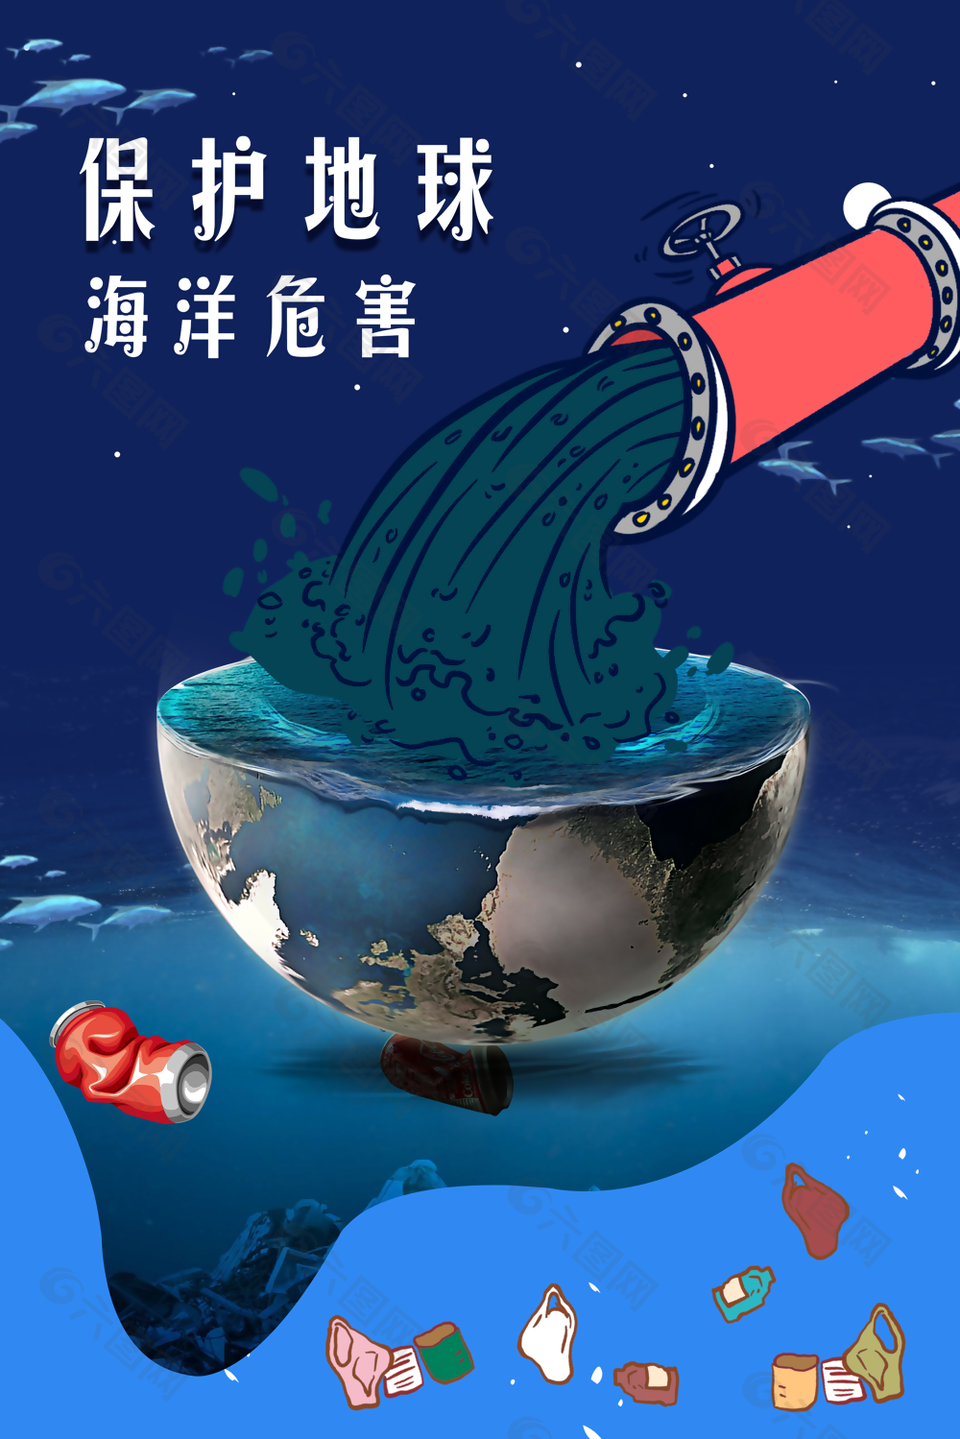 创意手绘保护地球维护海洋公益海报图设计